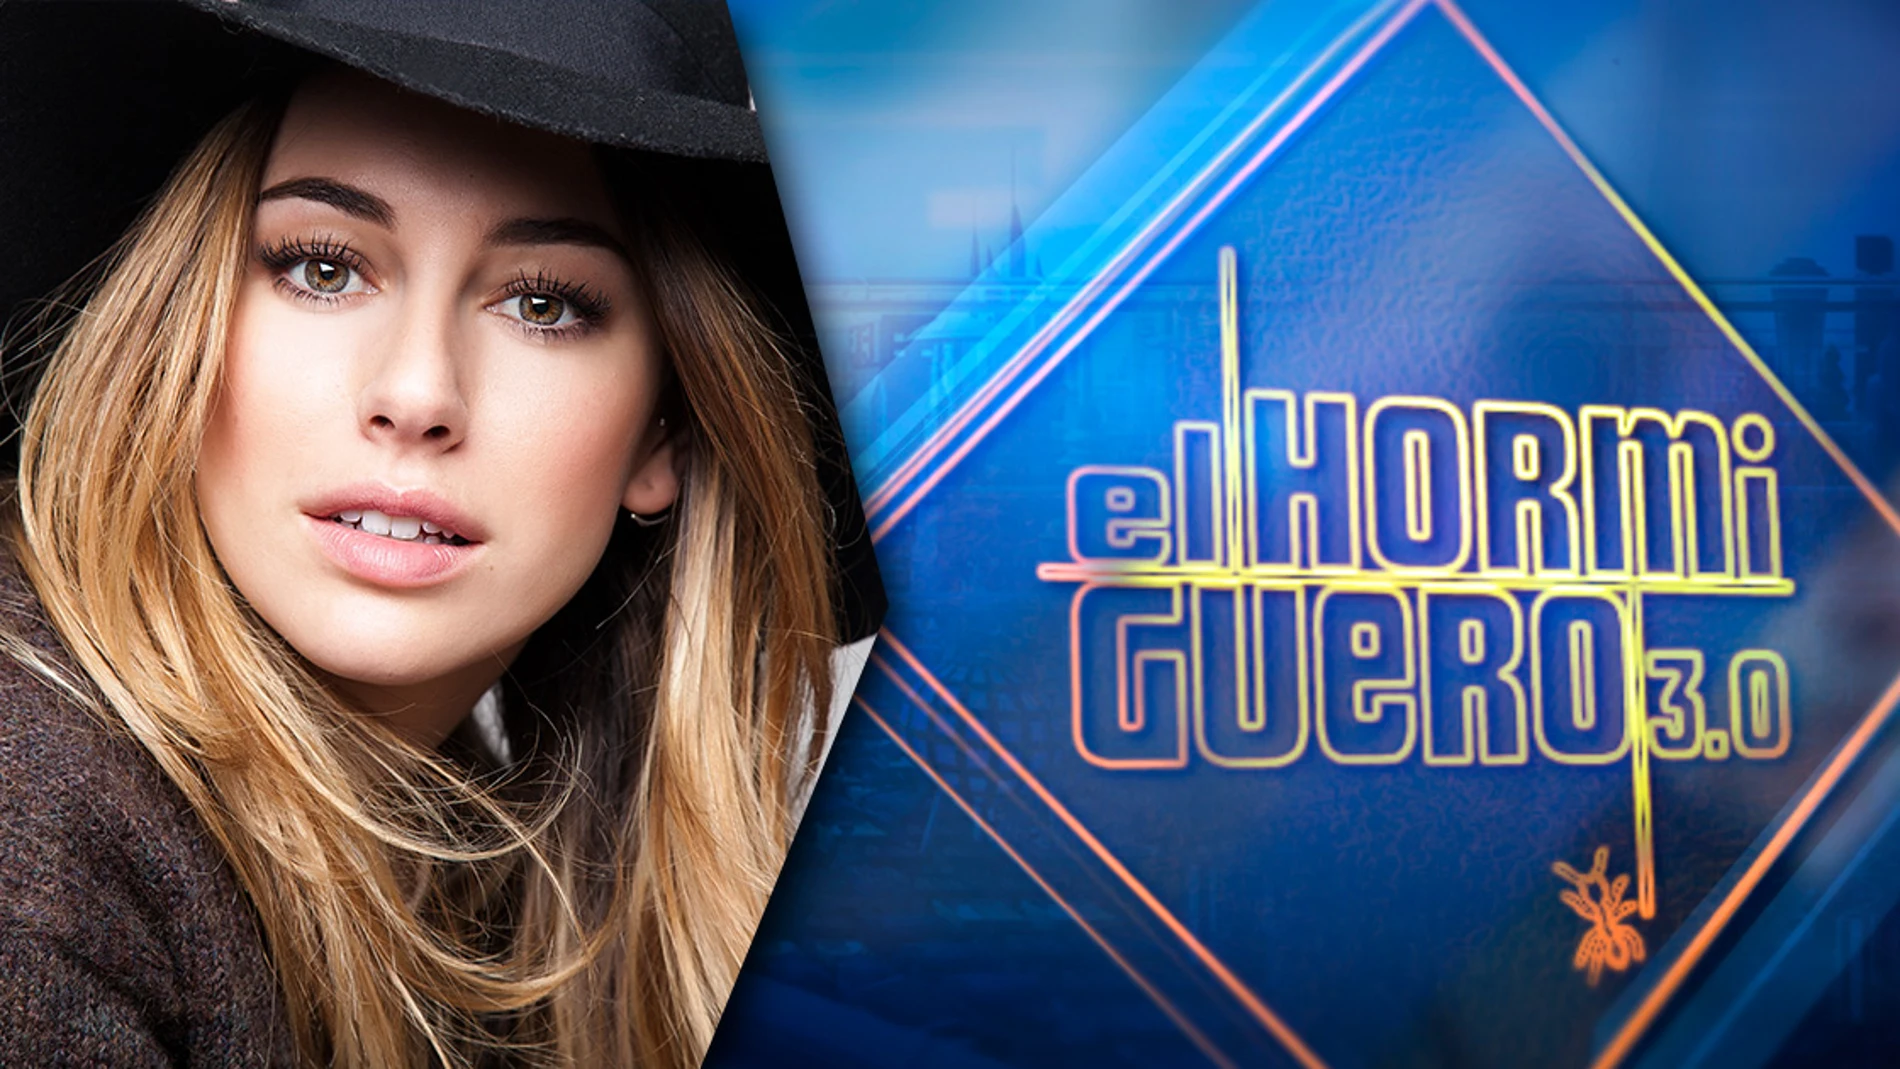 El martes, Blanca Suárez vendrá a divertirse a 'El Hormiguero 3.0'